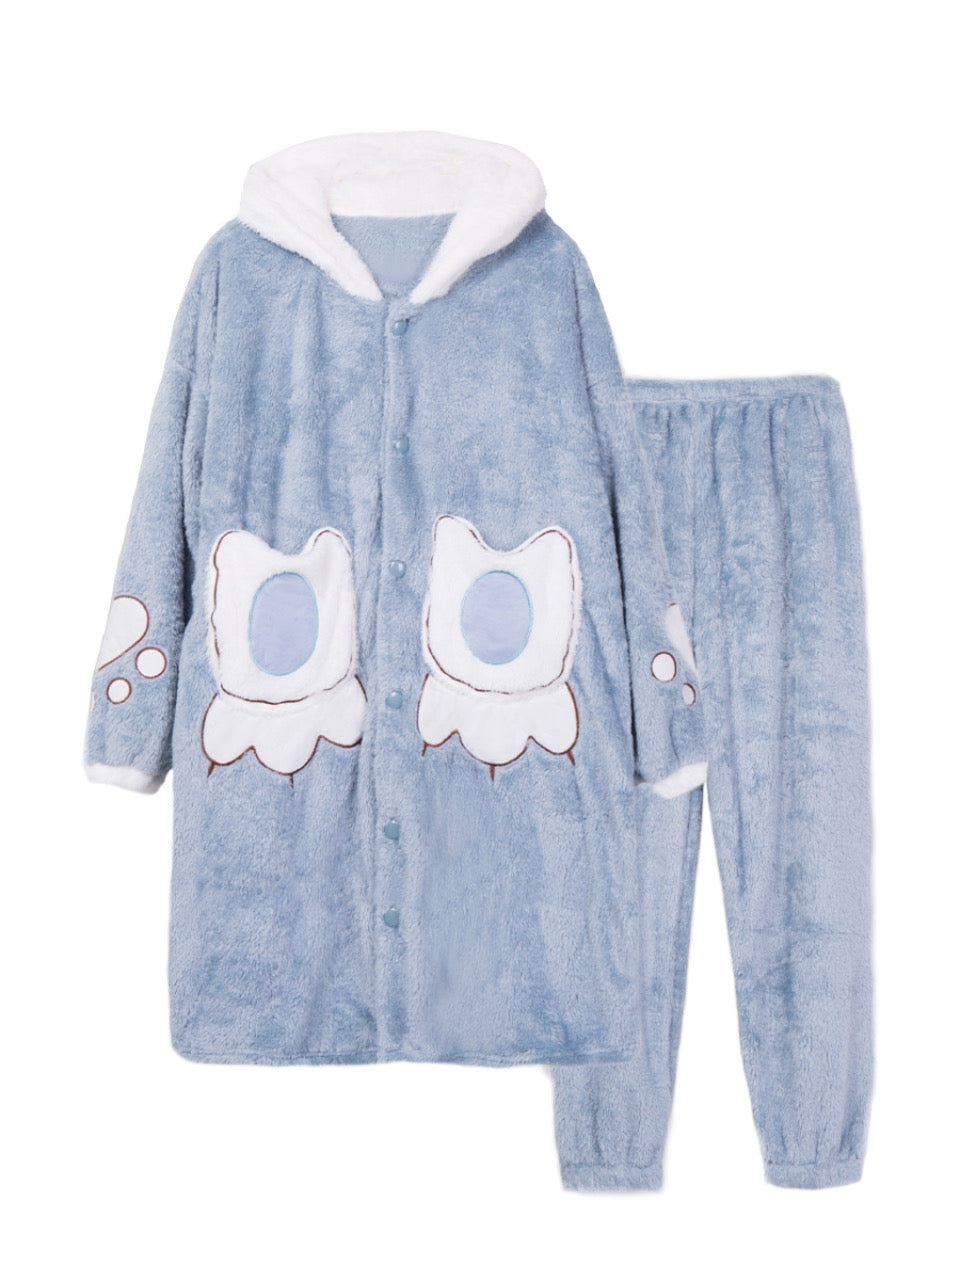 Big Paw Cozy Dreamy Winter Fleece Sleepwear Nightgown Sets-ntbhshop